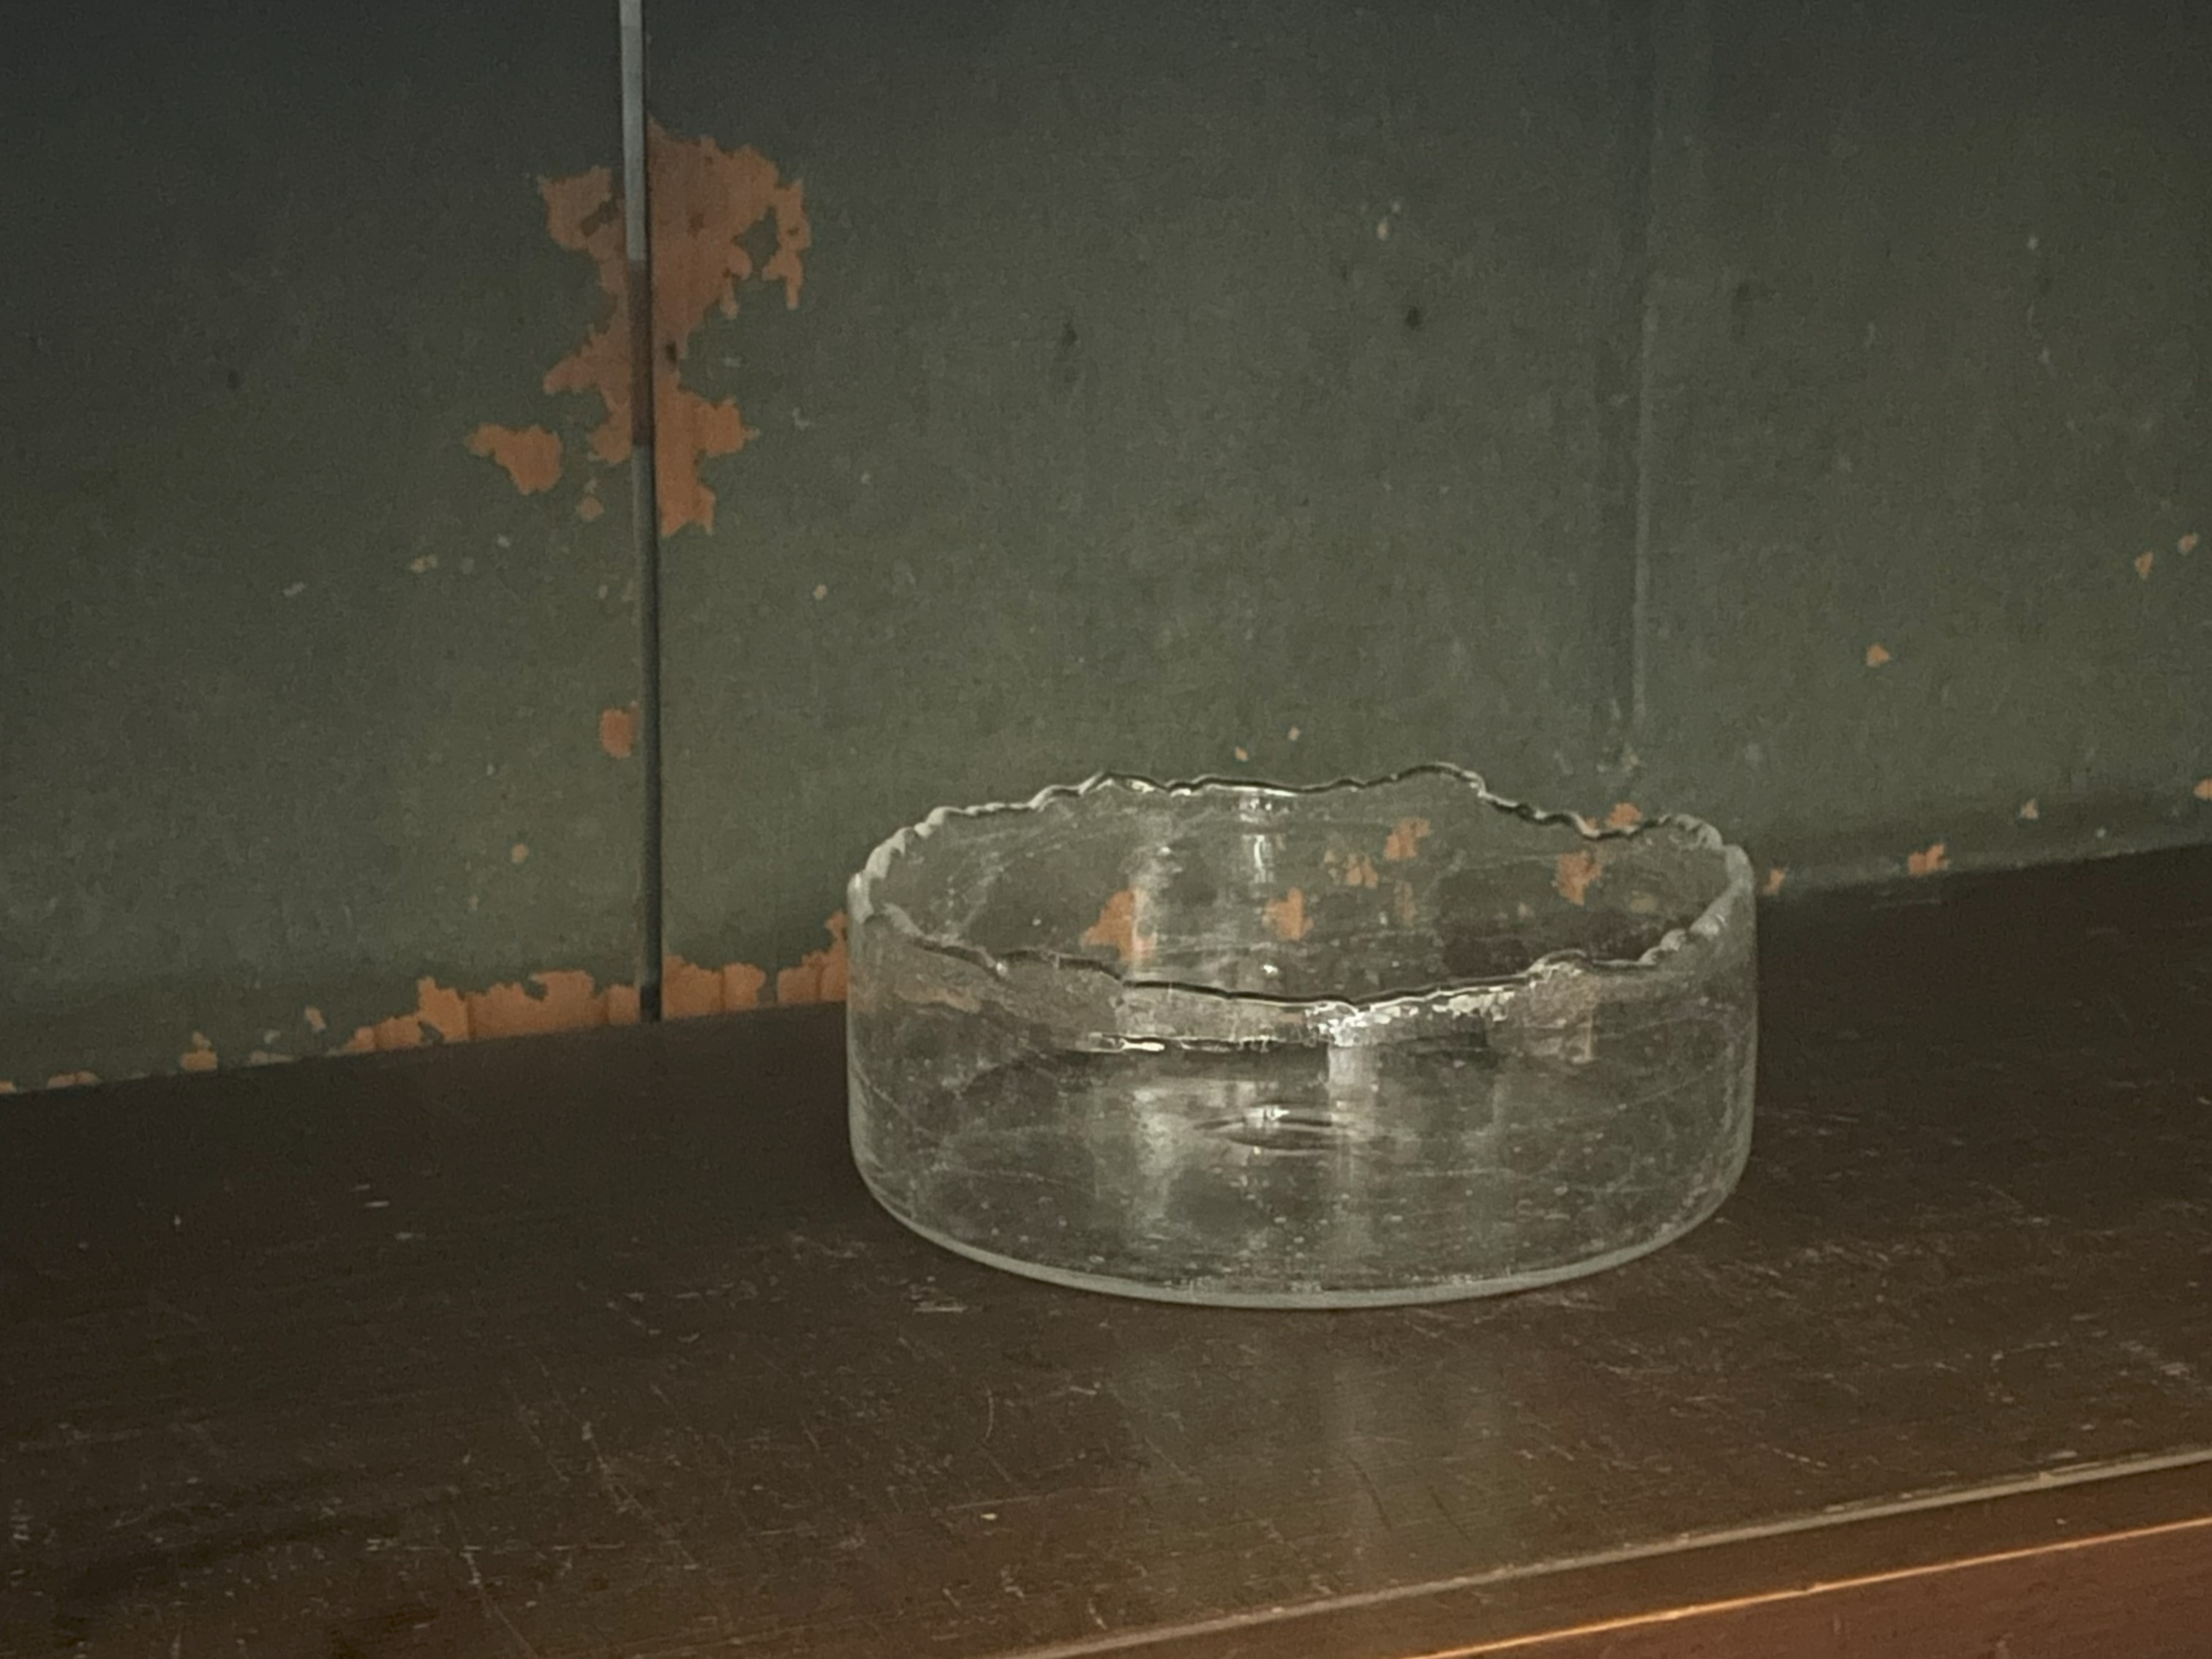 氷の銅鑼鉢 glass atelierえむに @atelier_emuni